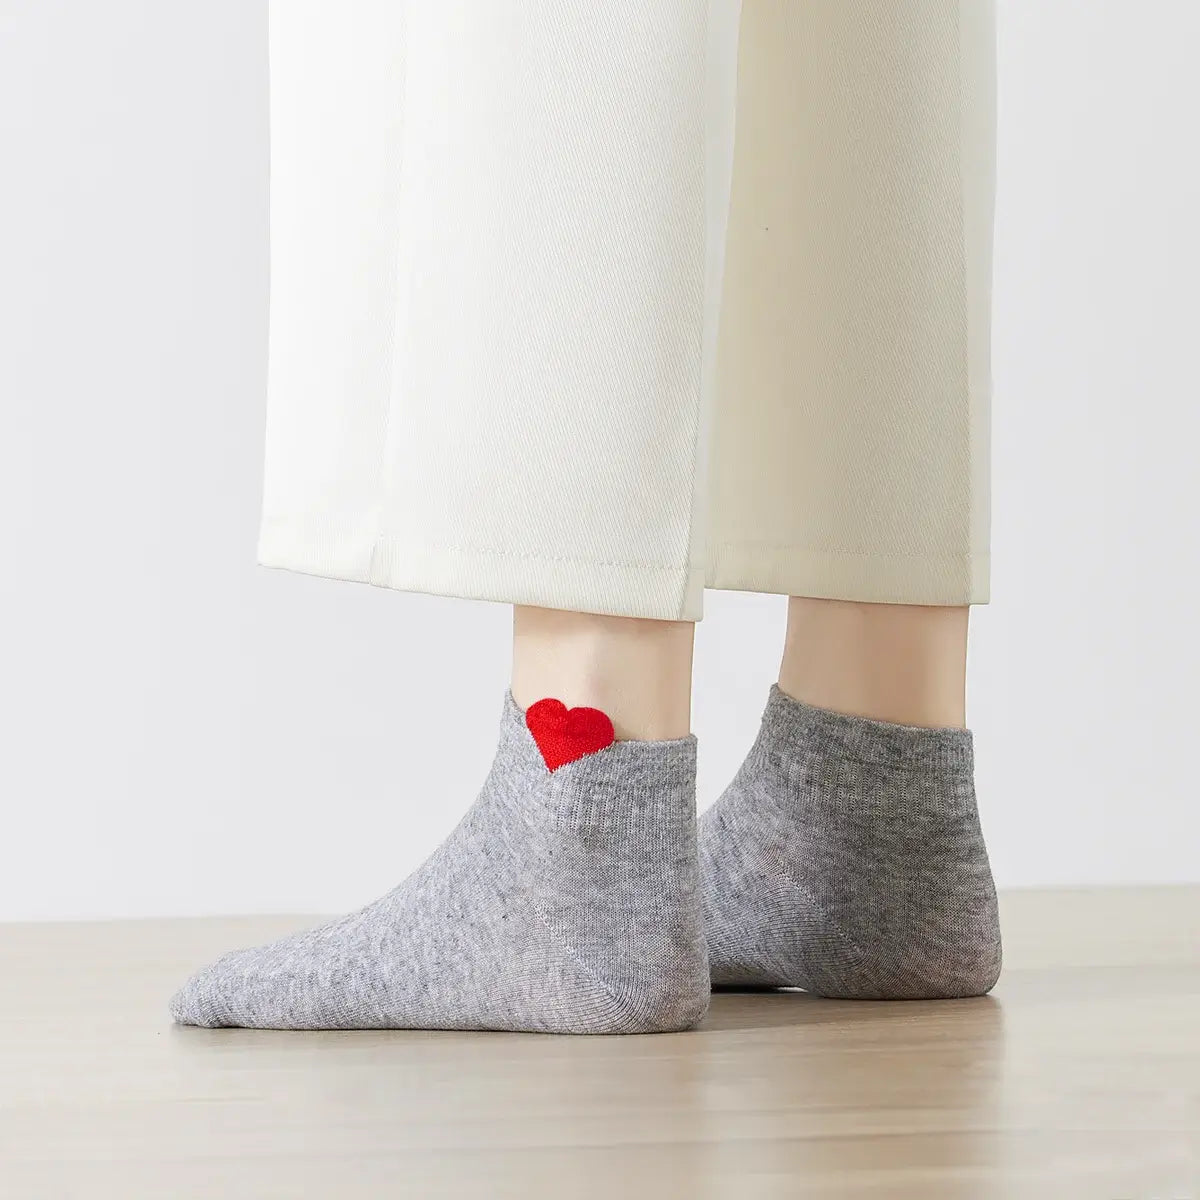 Chaussettes grise en coton à motif cœur pour femmes | Chaussettes douces et confortables | Fabriquées à partir de matériaux de haute qualité | Un cadeau parfait pour les femmes de tous âges | Disponibles en différentes couleurs